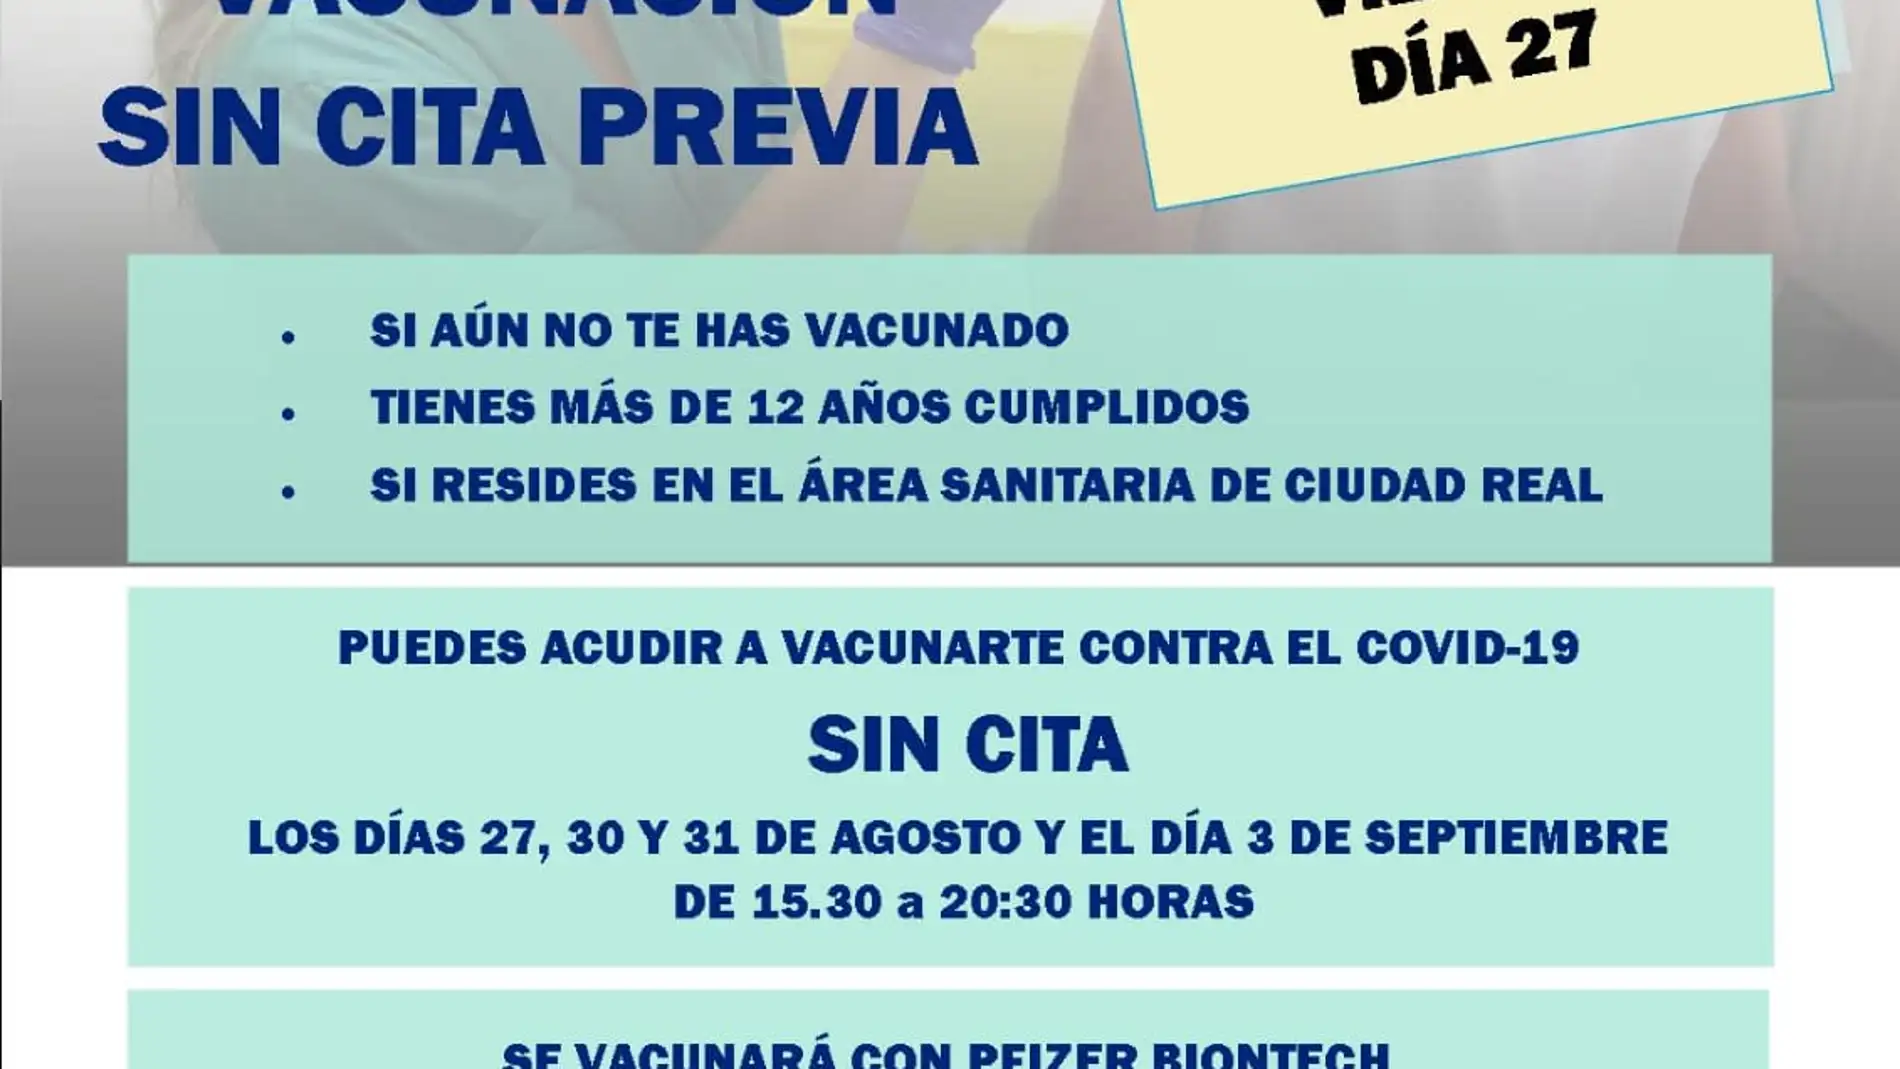 El viernes también habrá vacunación sin cita en el Hospital de Ciudad Real